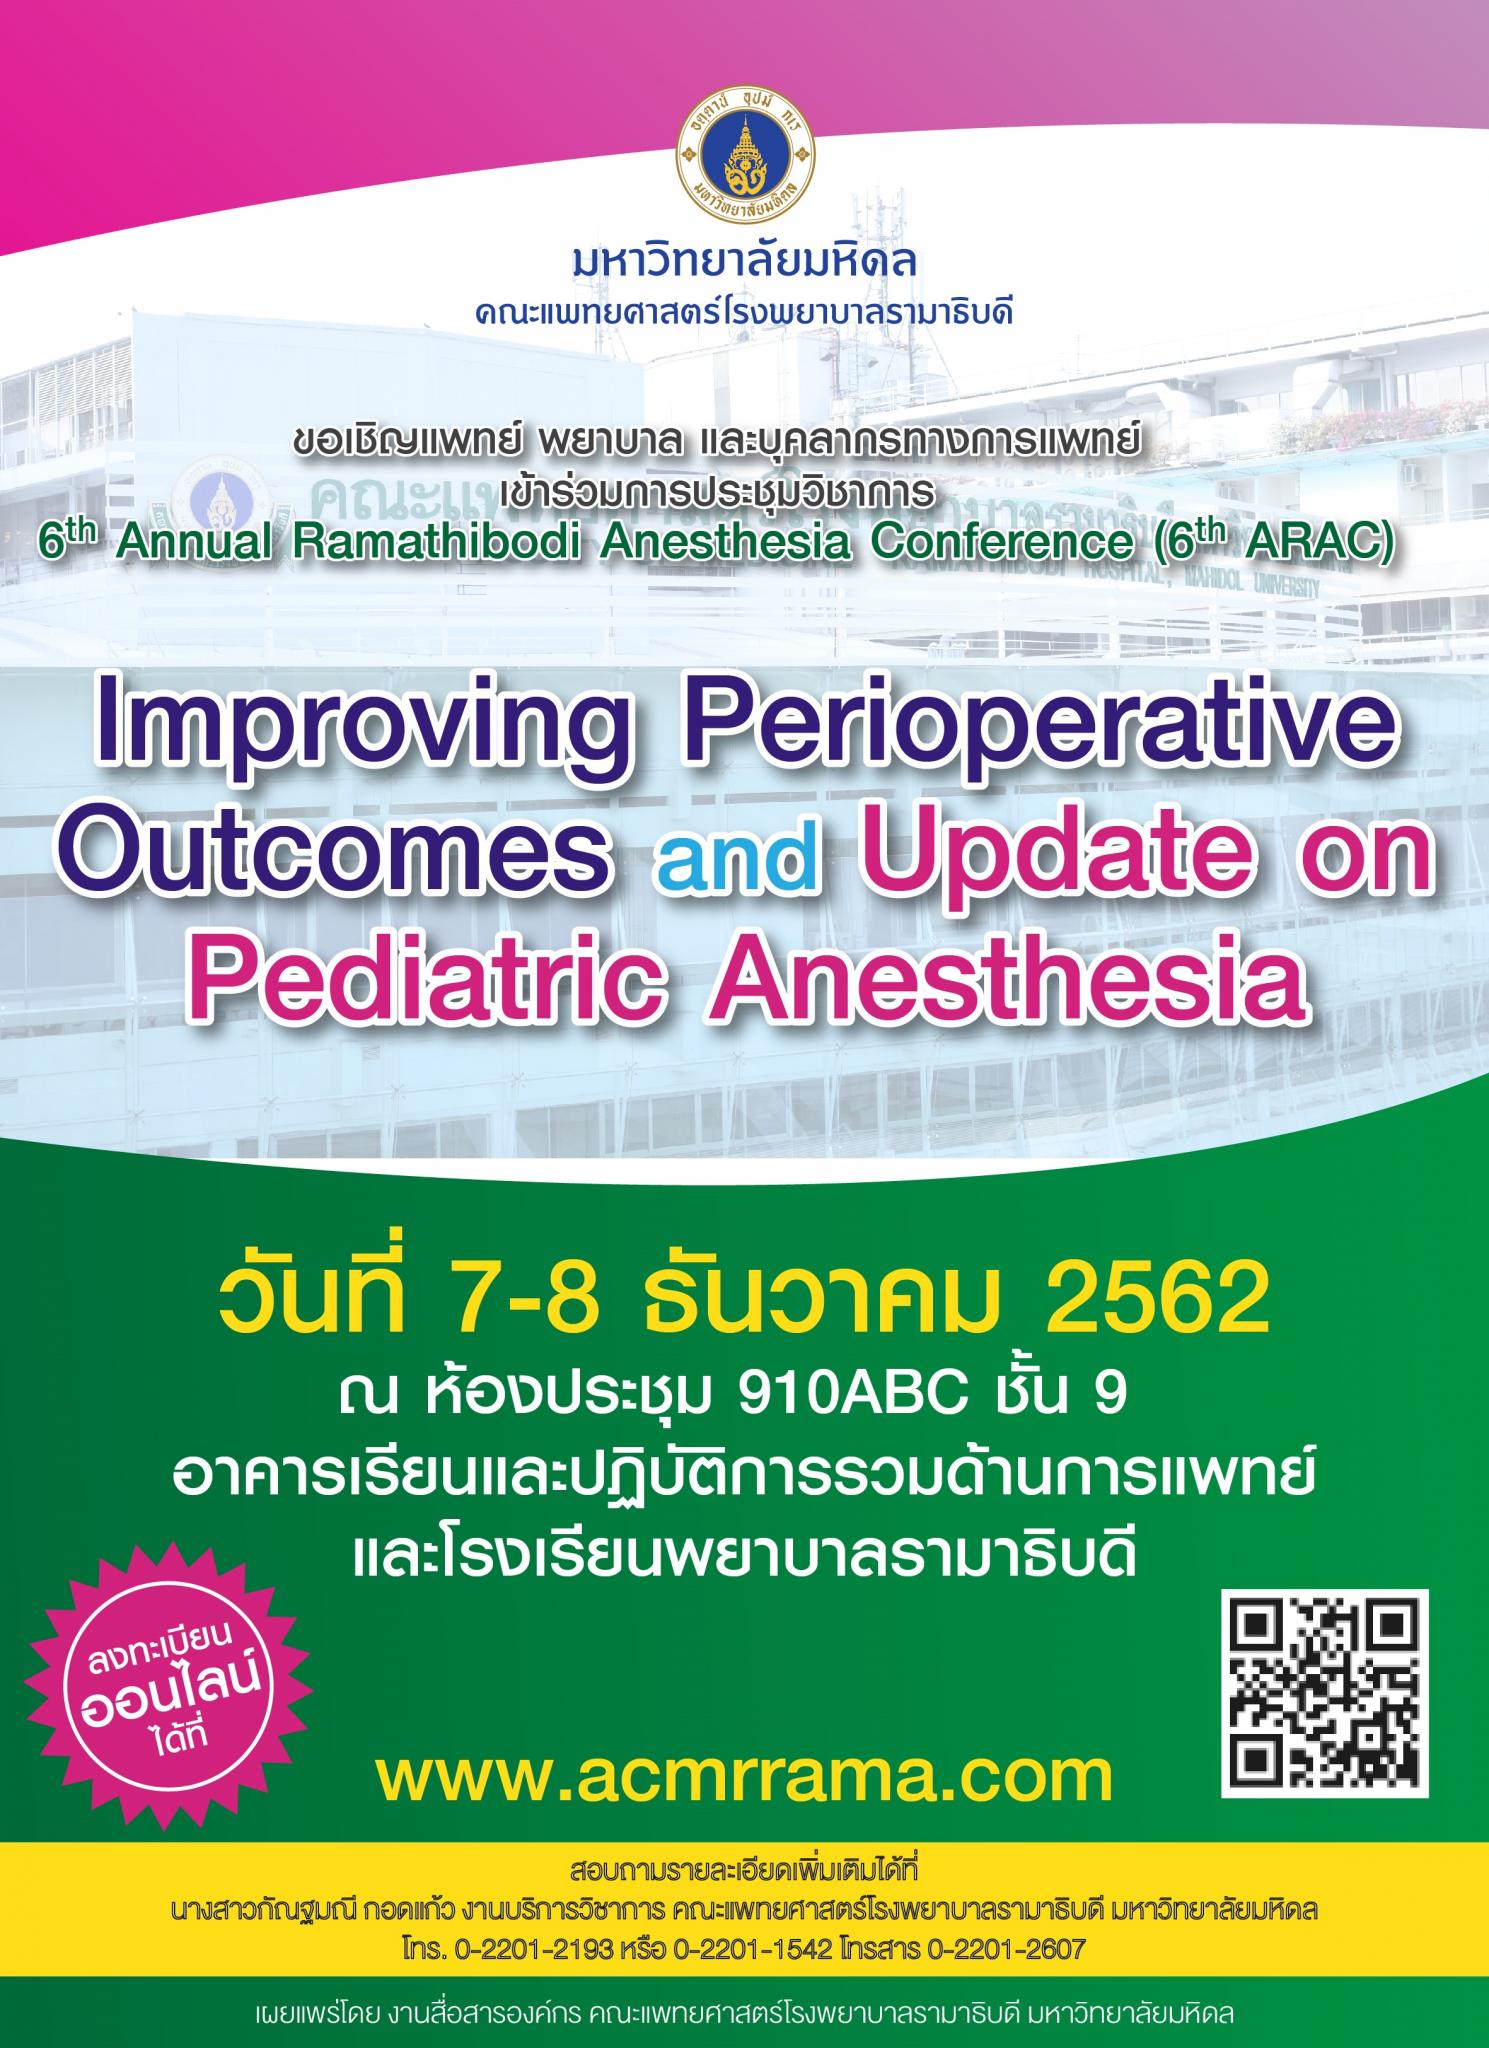 ประชุมวิชาการ The 6th Annual Ramathibodi Anesthesia Conference (6th ARAC)